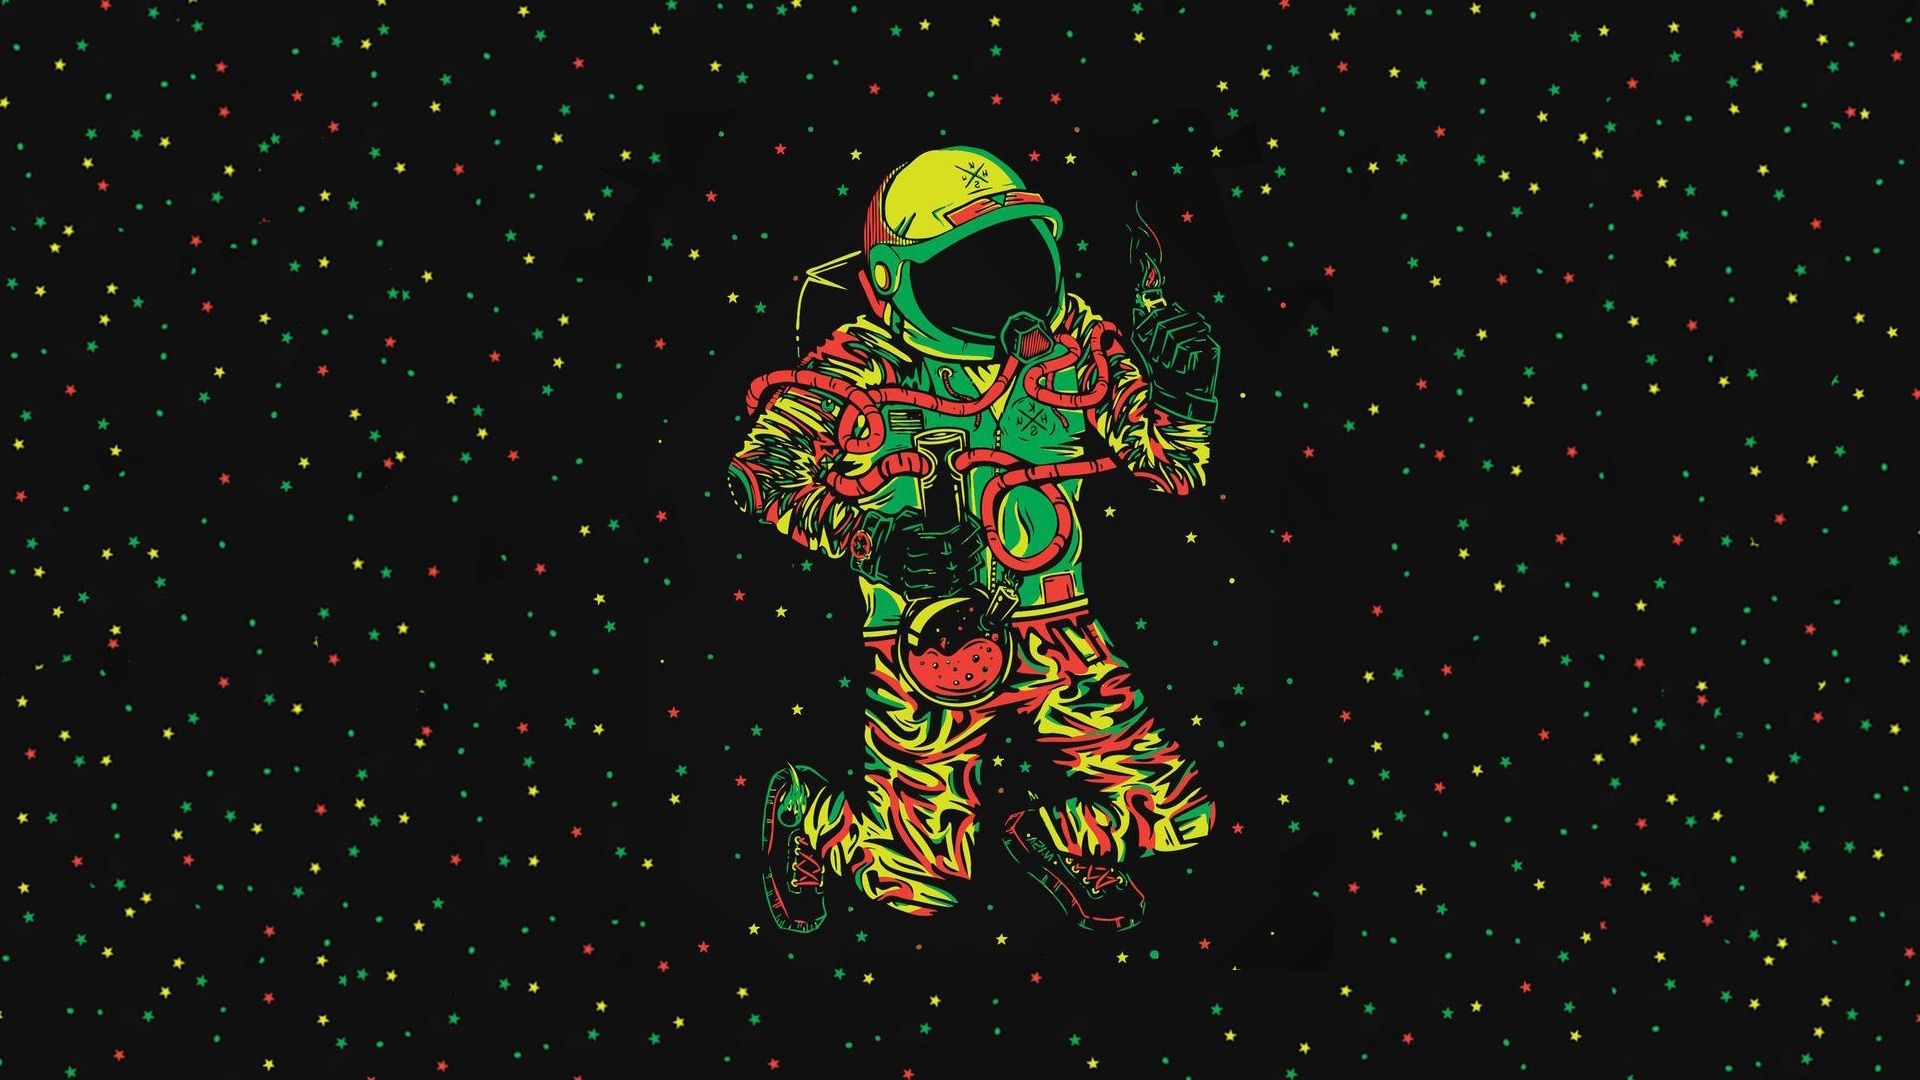 Cool Astronaut Art Wallpaper